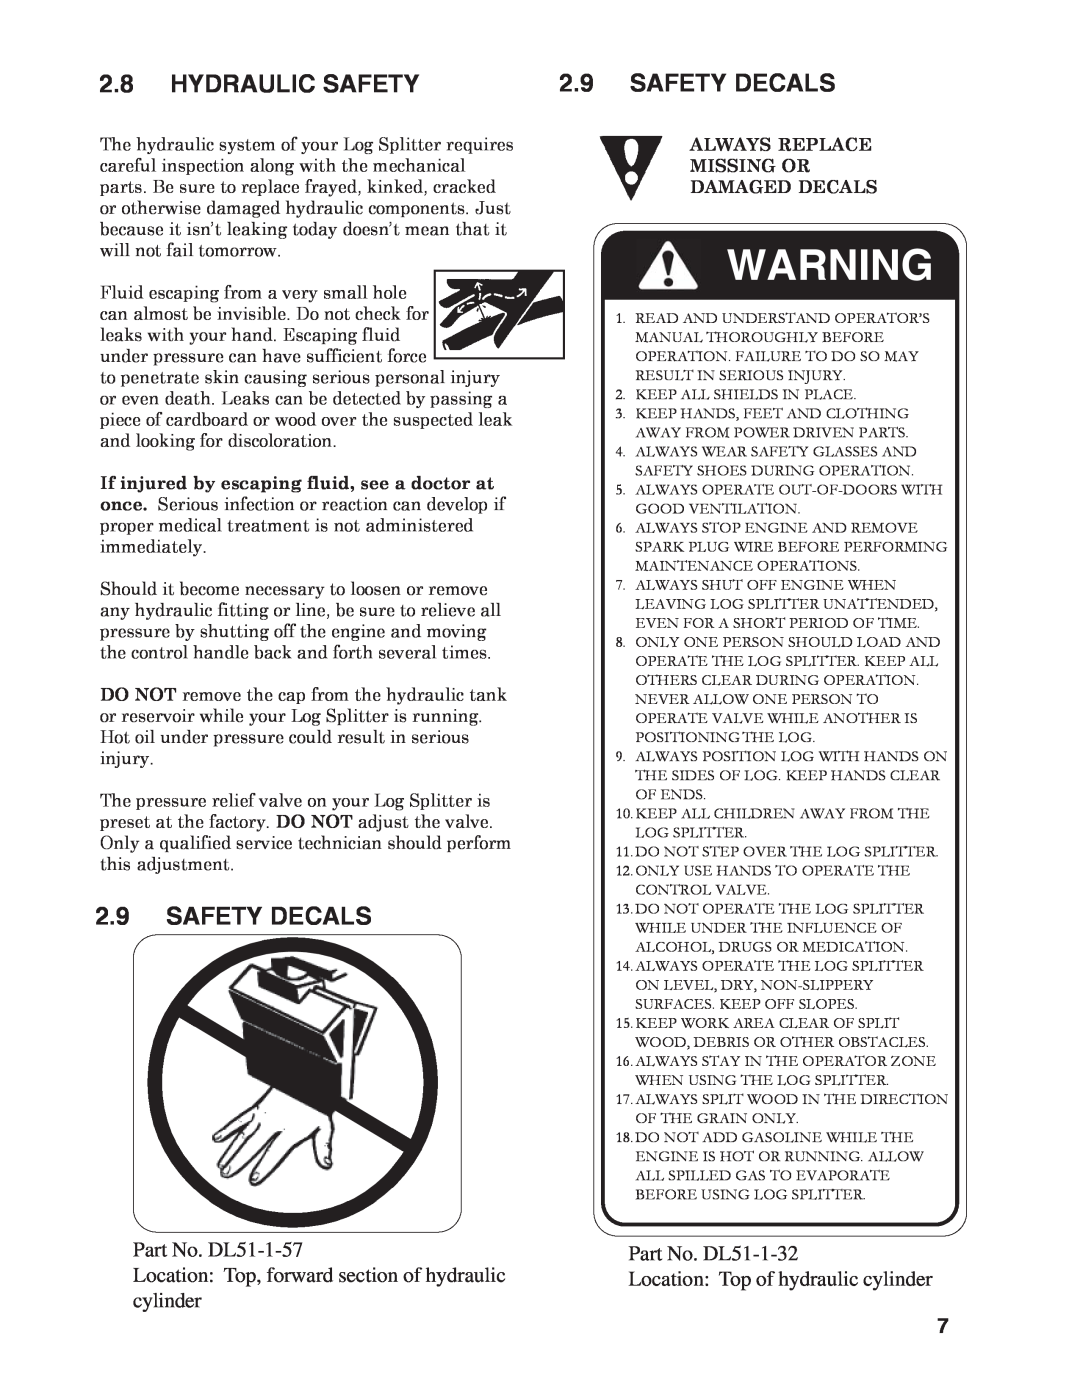 Briggs & Stratton T22B & T22H Hydraulic Safety, Safety Decals, 2.9SAFETY DECALS, Part No. DL51-1-57, Part No. DL51-1-32 